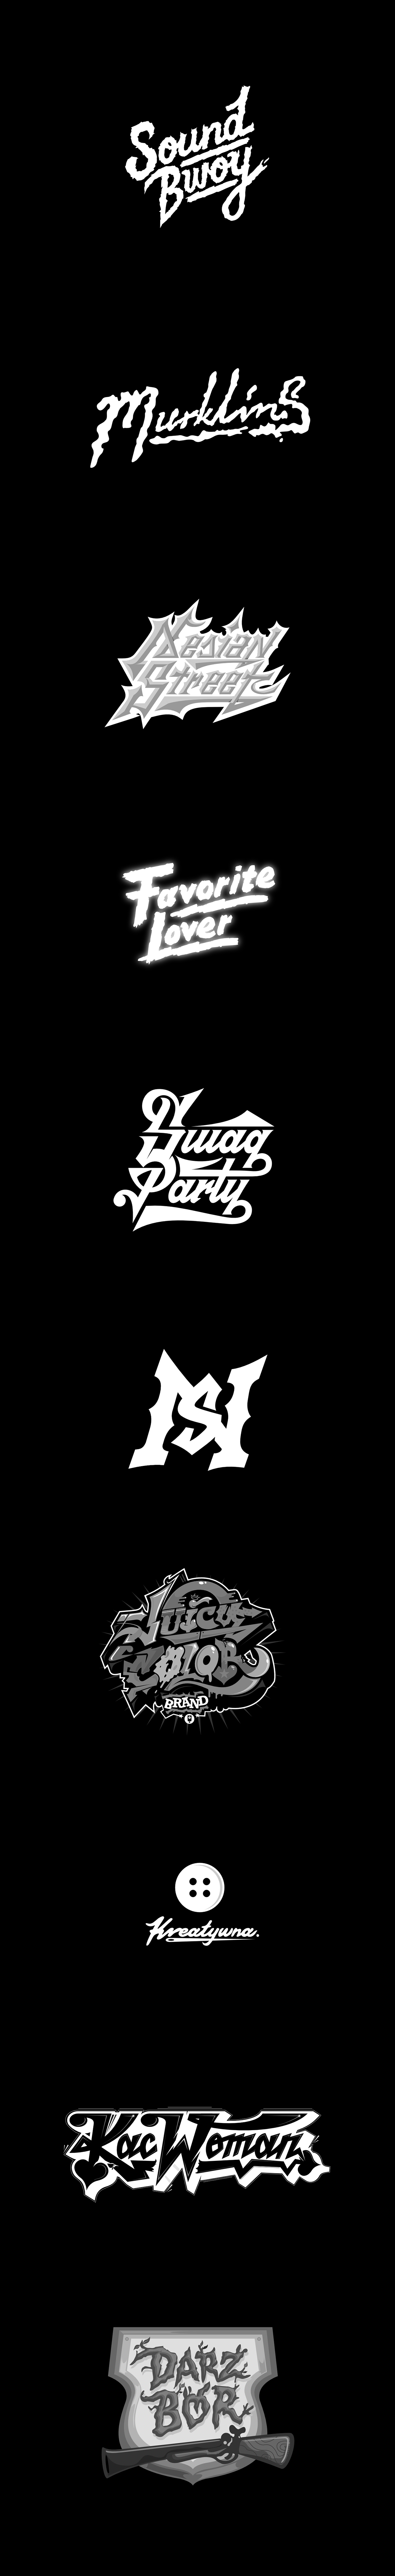 Filip Komorowski typografia type crazy letters logotyp Logotype typography   vector visual identity